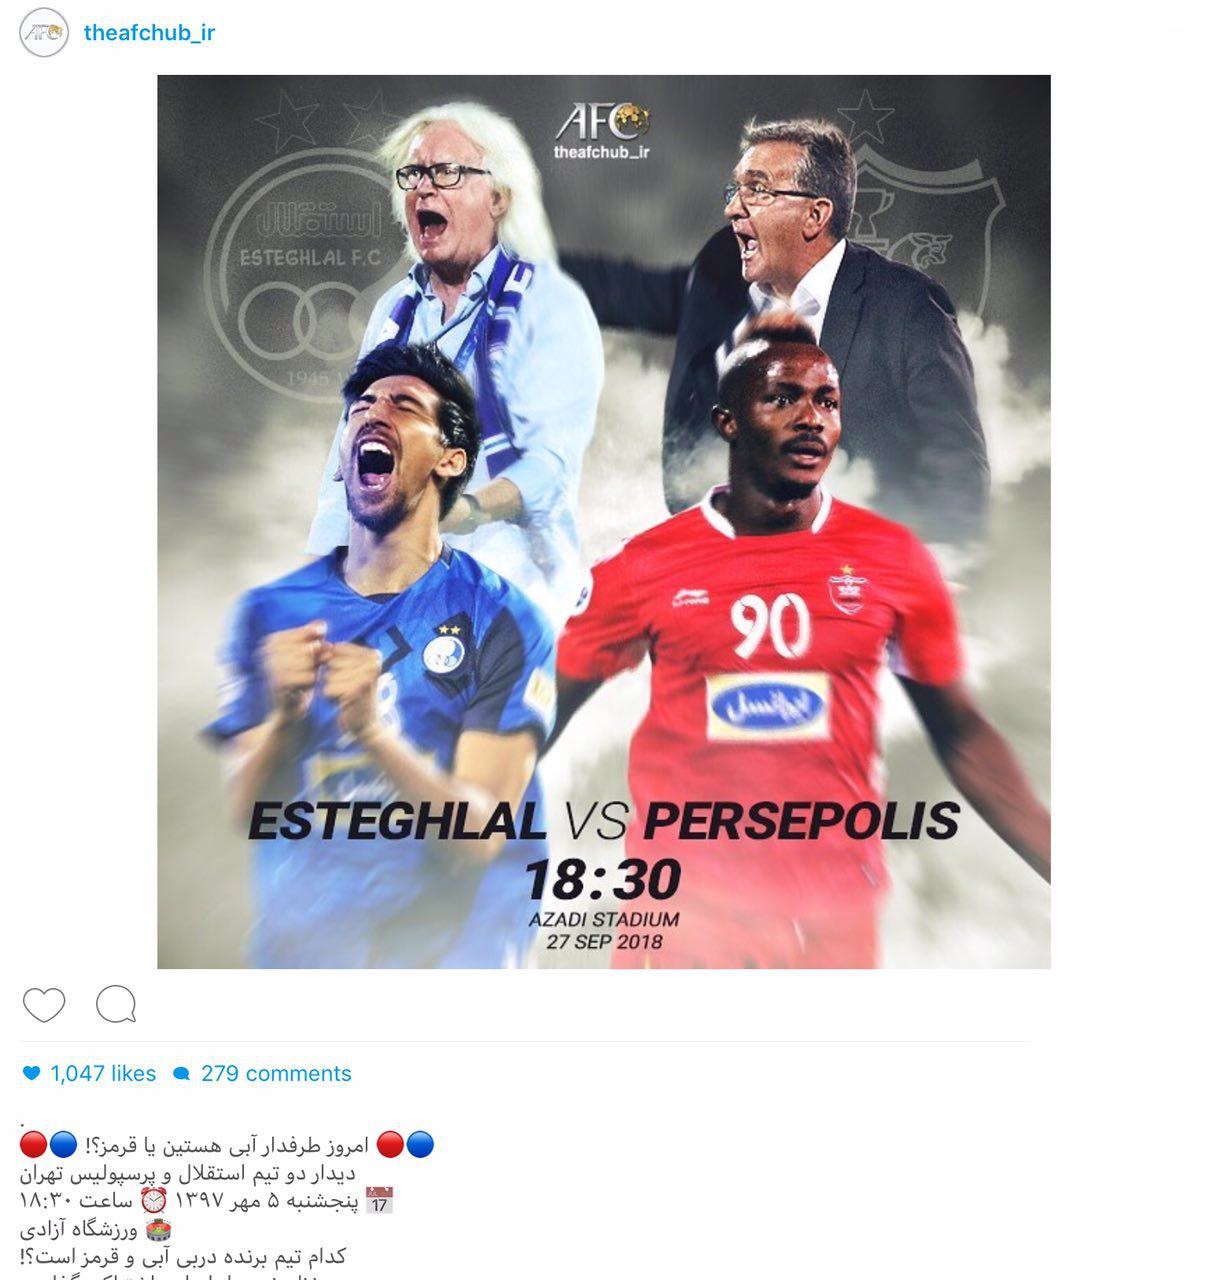 صفحه اینستاگرام کنفدراسیون فوتبال آسیا با انتشار تصویری درباره دربی بزرگ آسیا نوشت.